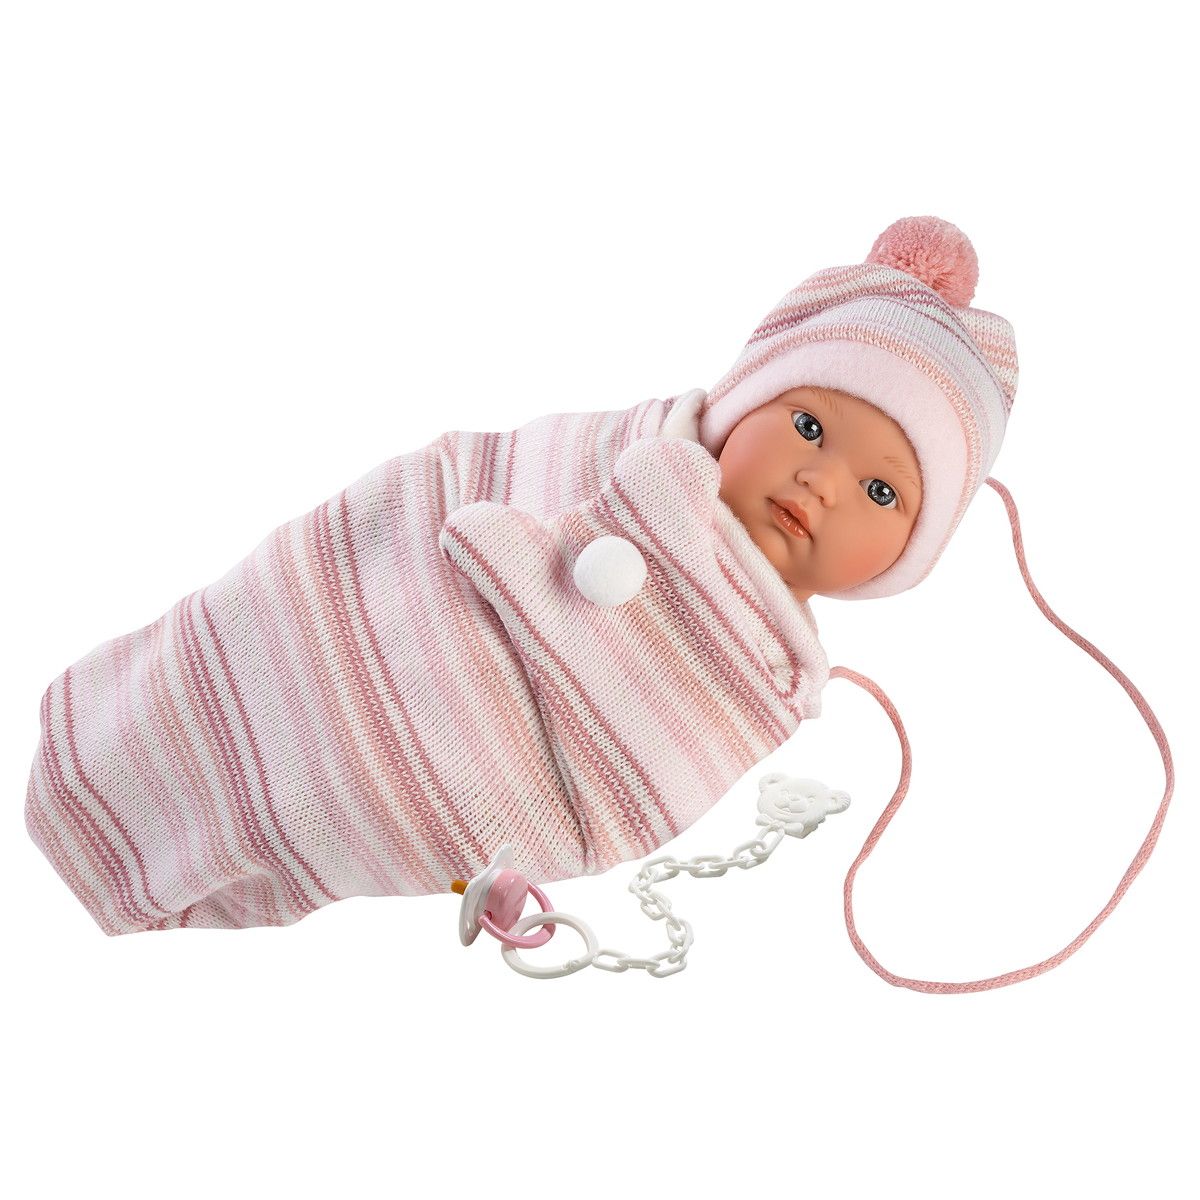 Интерактивная кукла Кука, 30 см  